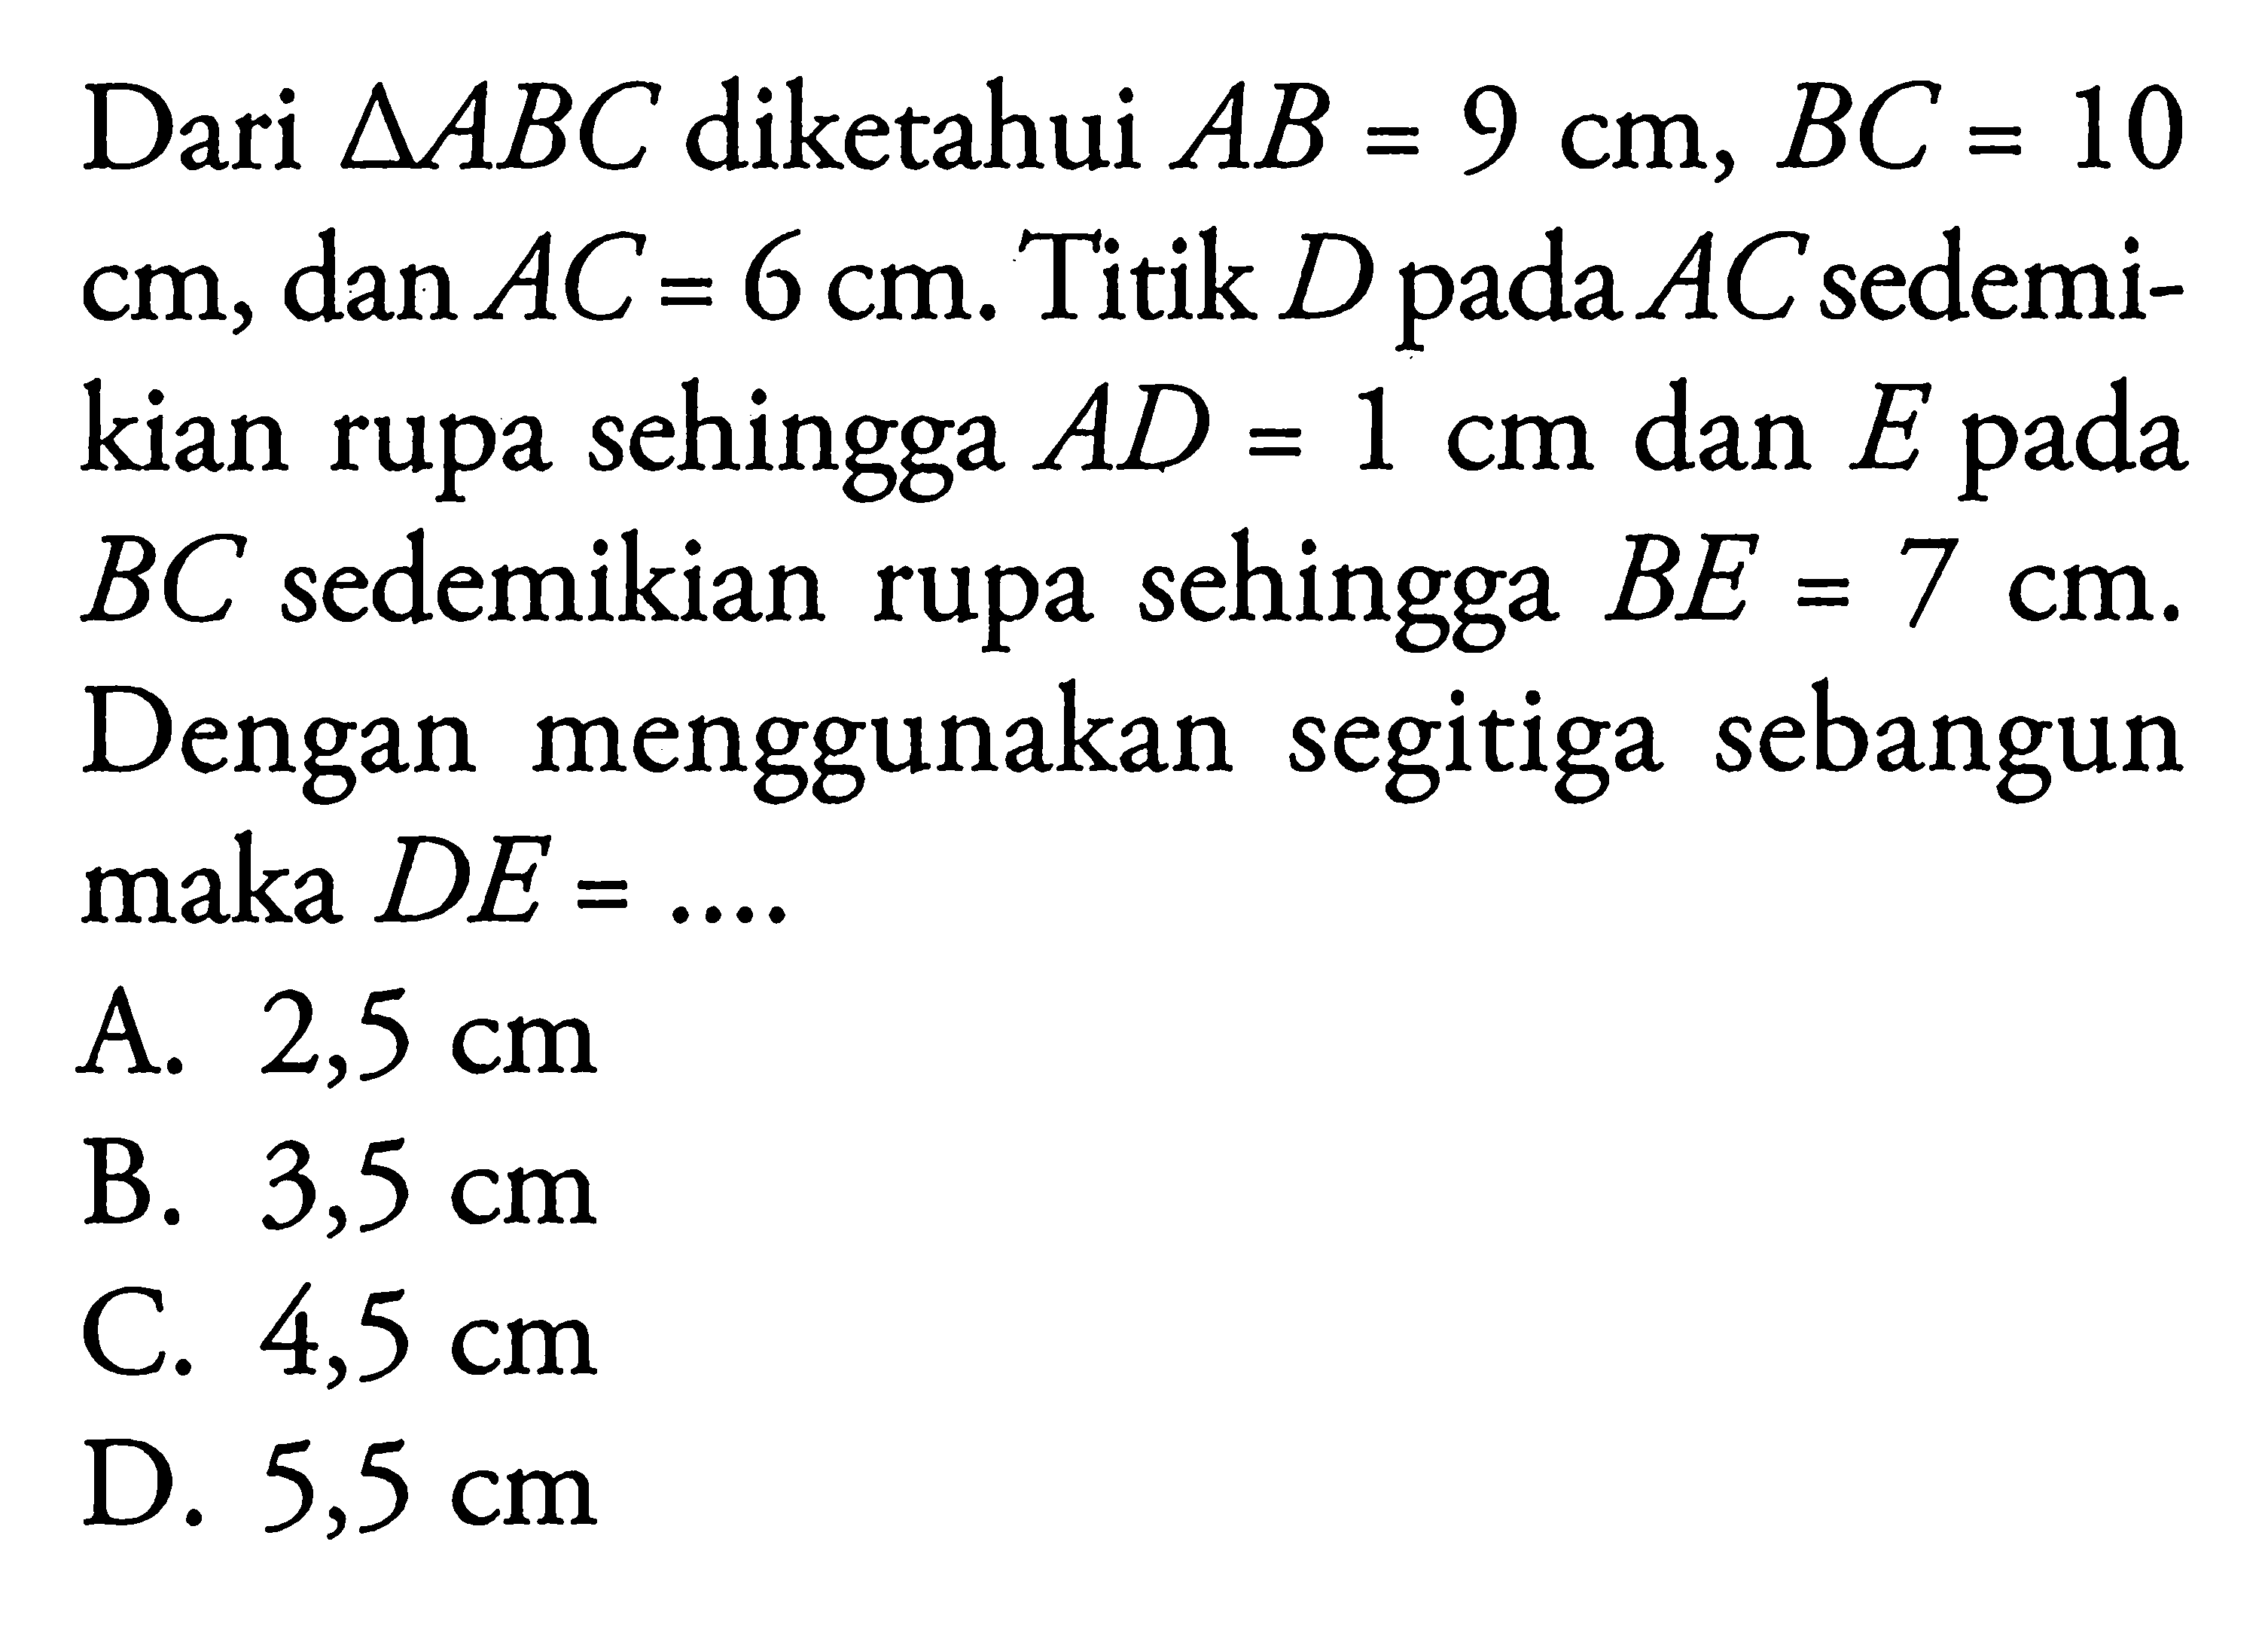 Dari segitiga ABC diketahui AB=9 cm, BC=10 cm , dan AC=6 cm. Titik D pada AC sedemikian rupa sehingga AD=1 cm dan E pada BC sedemikian rupa sehingga BE=7 cm. Dengan menggunakan segitiga sebangun maka  DE=... 